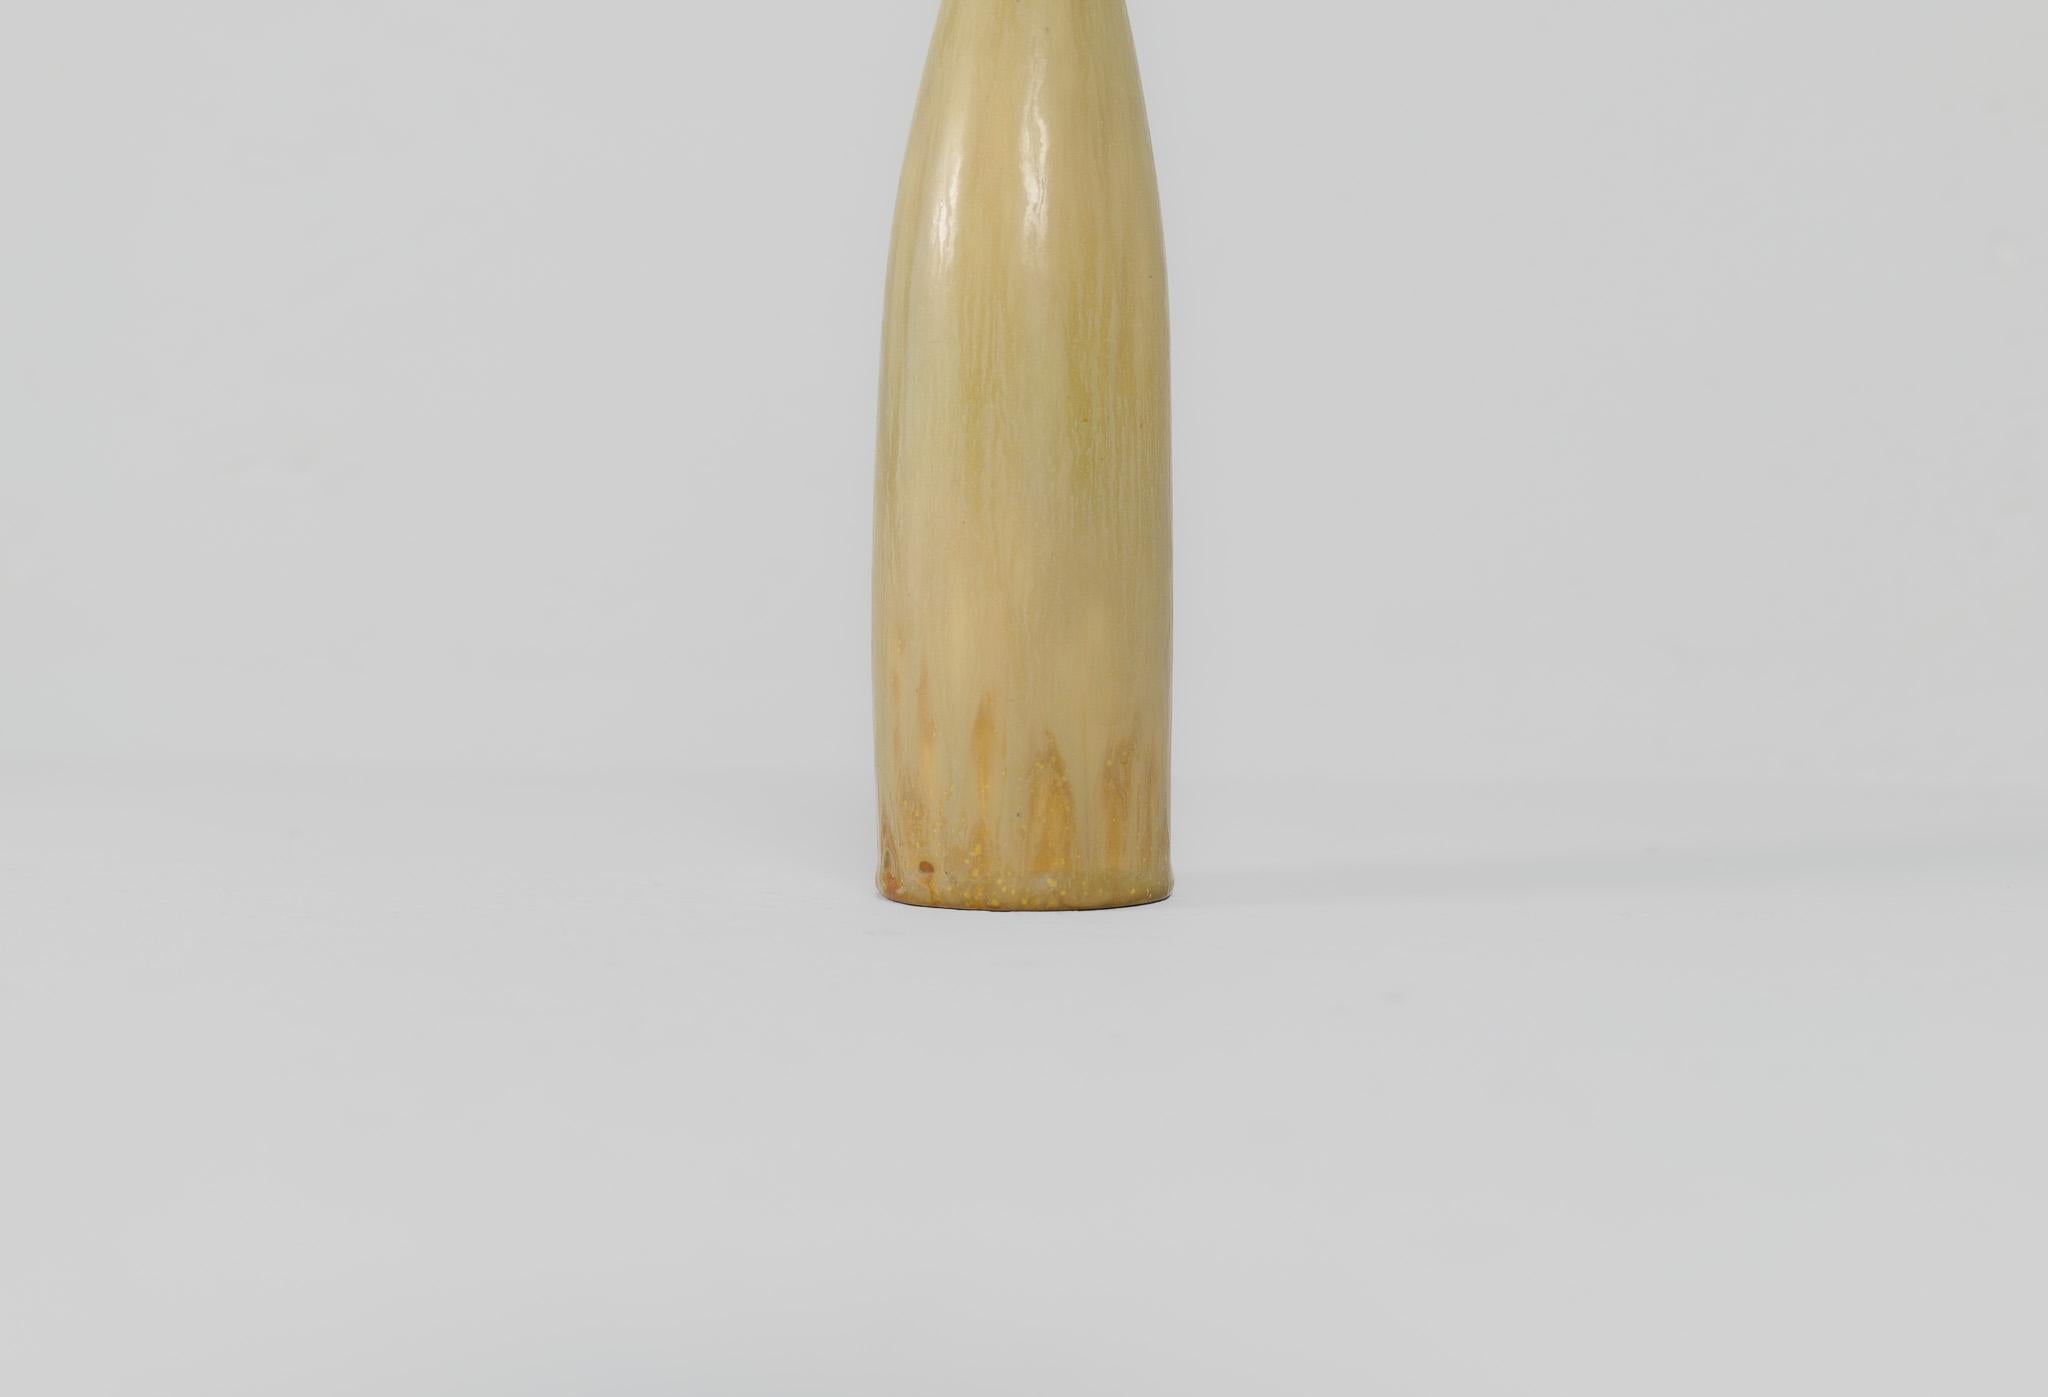 Midcentury Modern Sculptural Vase Rörstrand by Carl Harry Stålhane, Sweden, 1950 For Sale 3